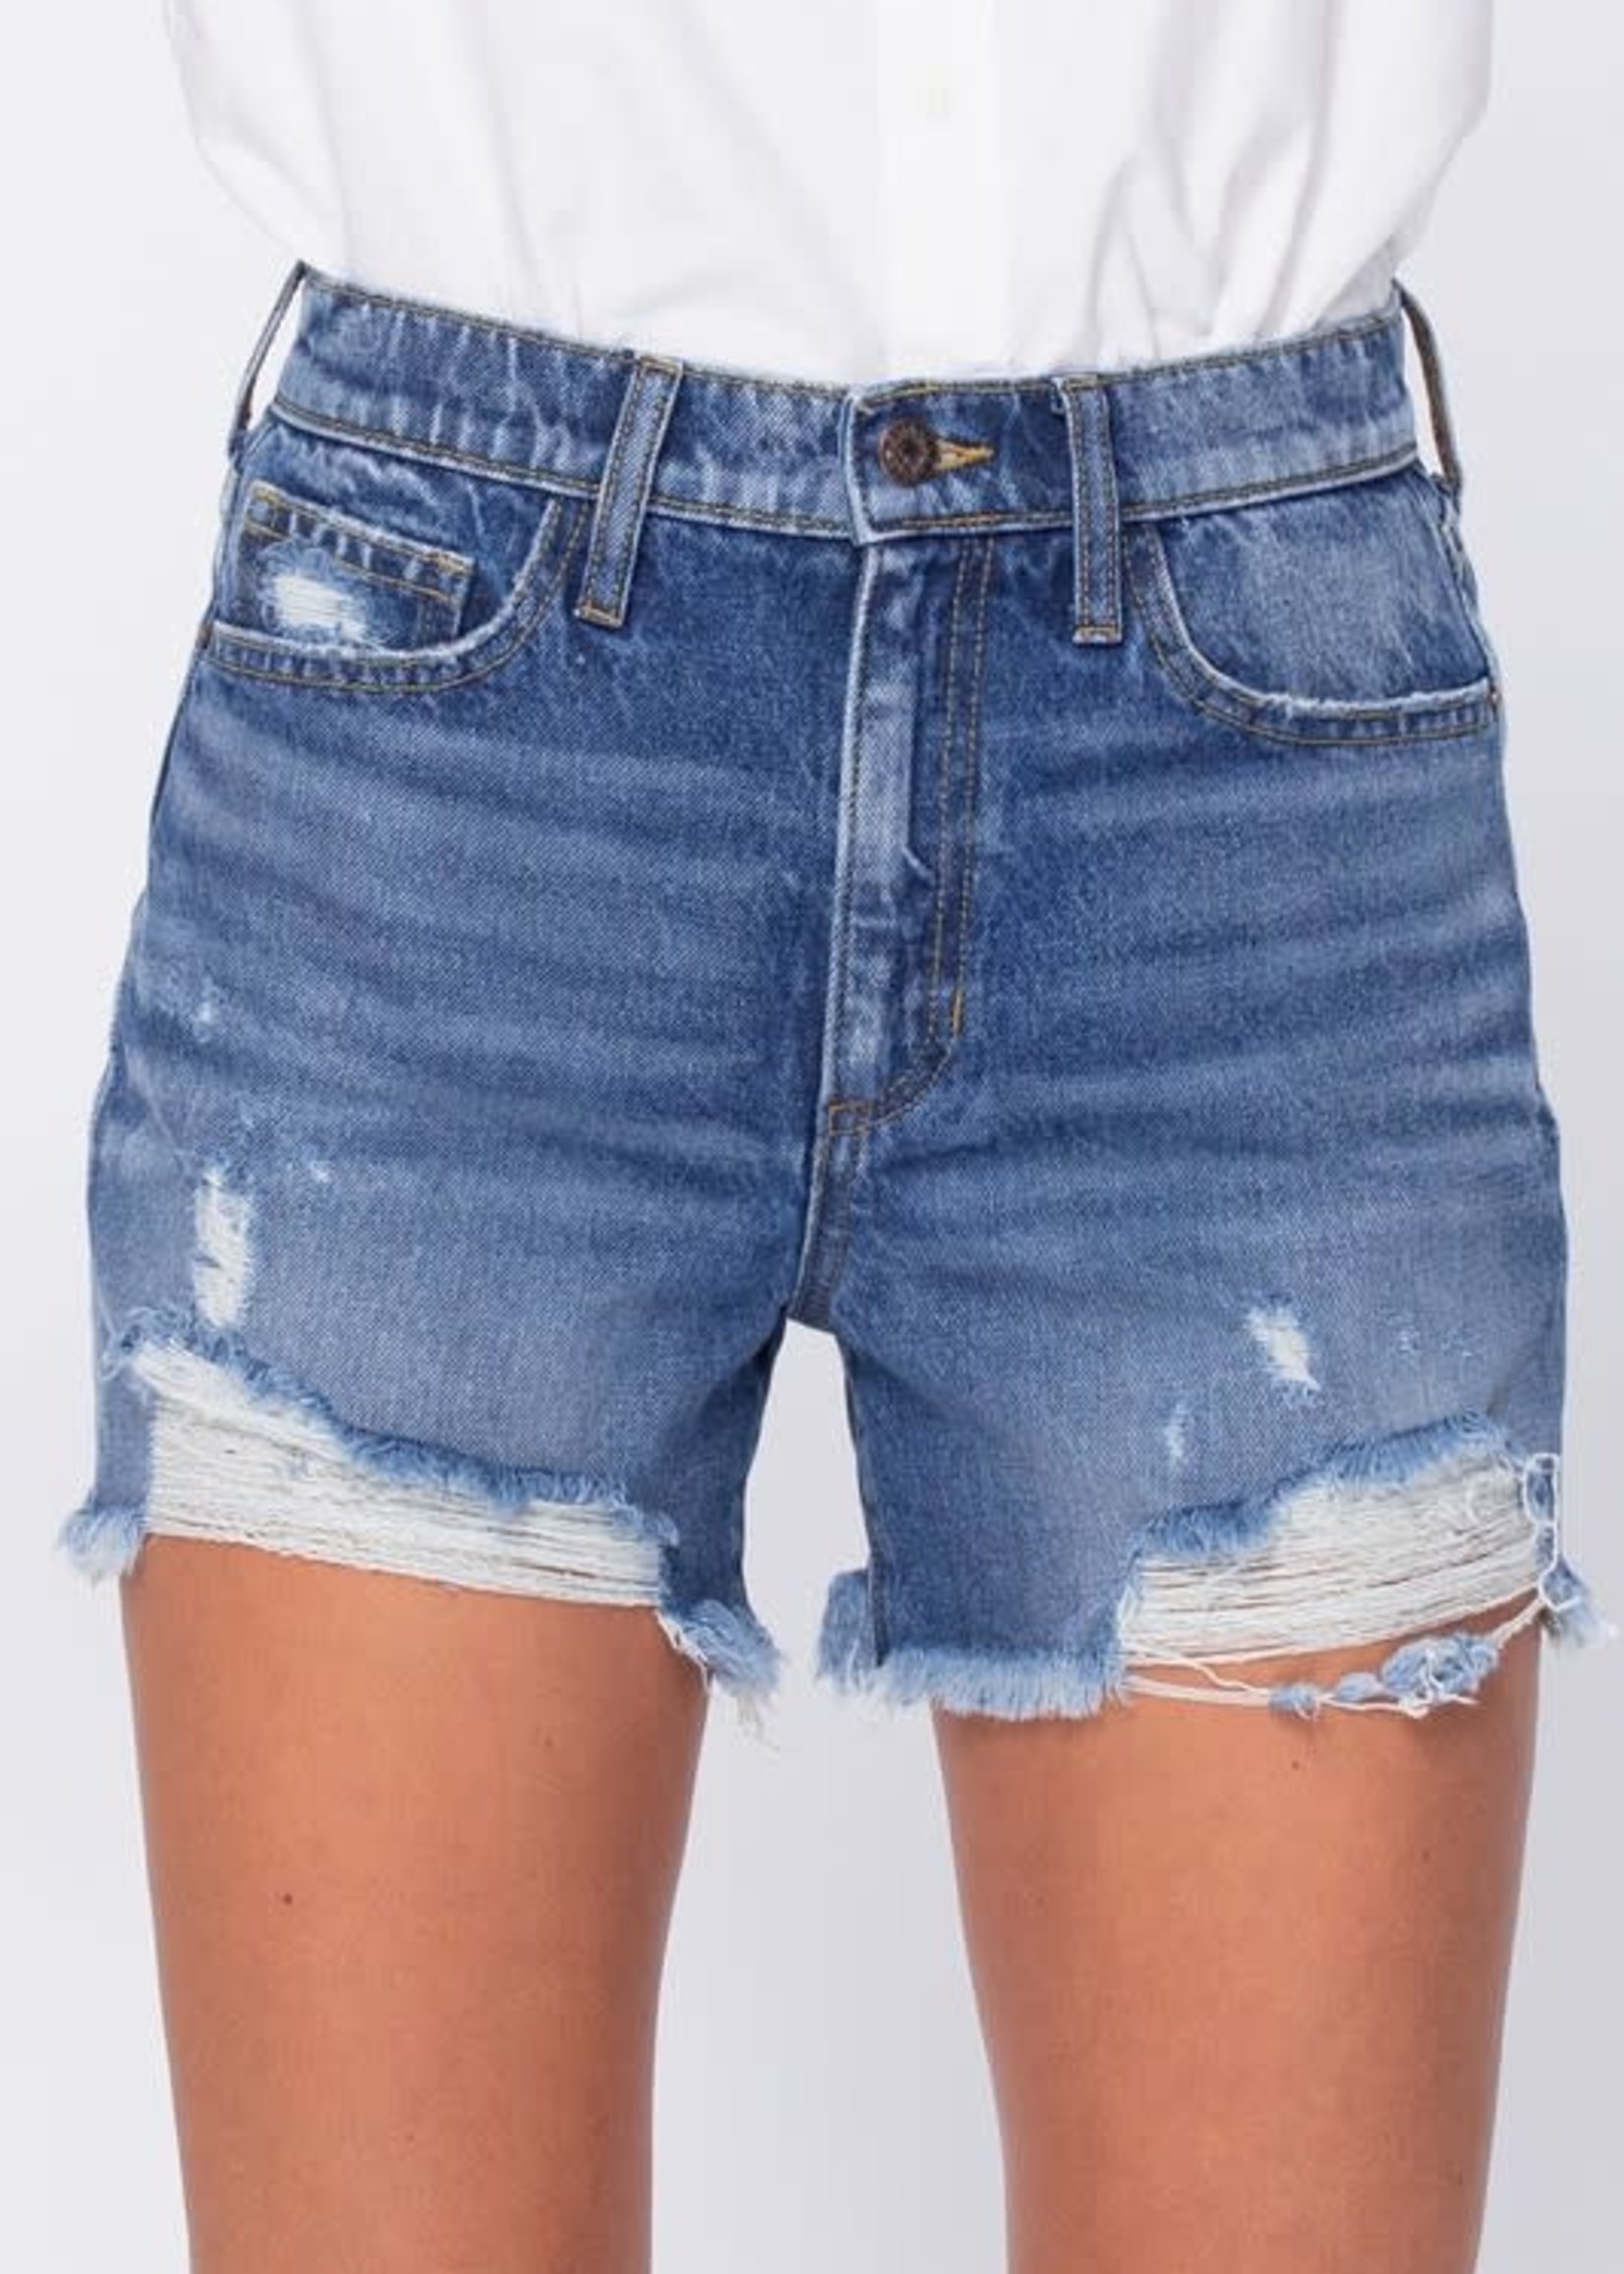 Best Of Summer Denim Shorts